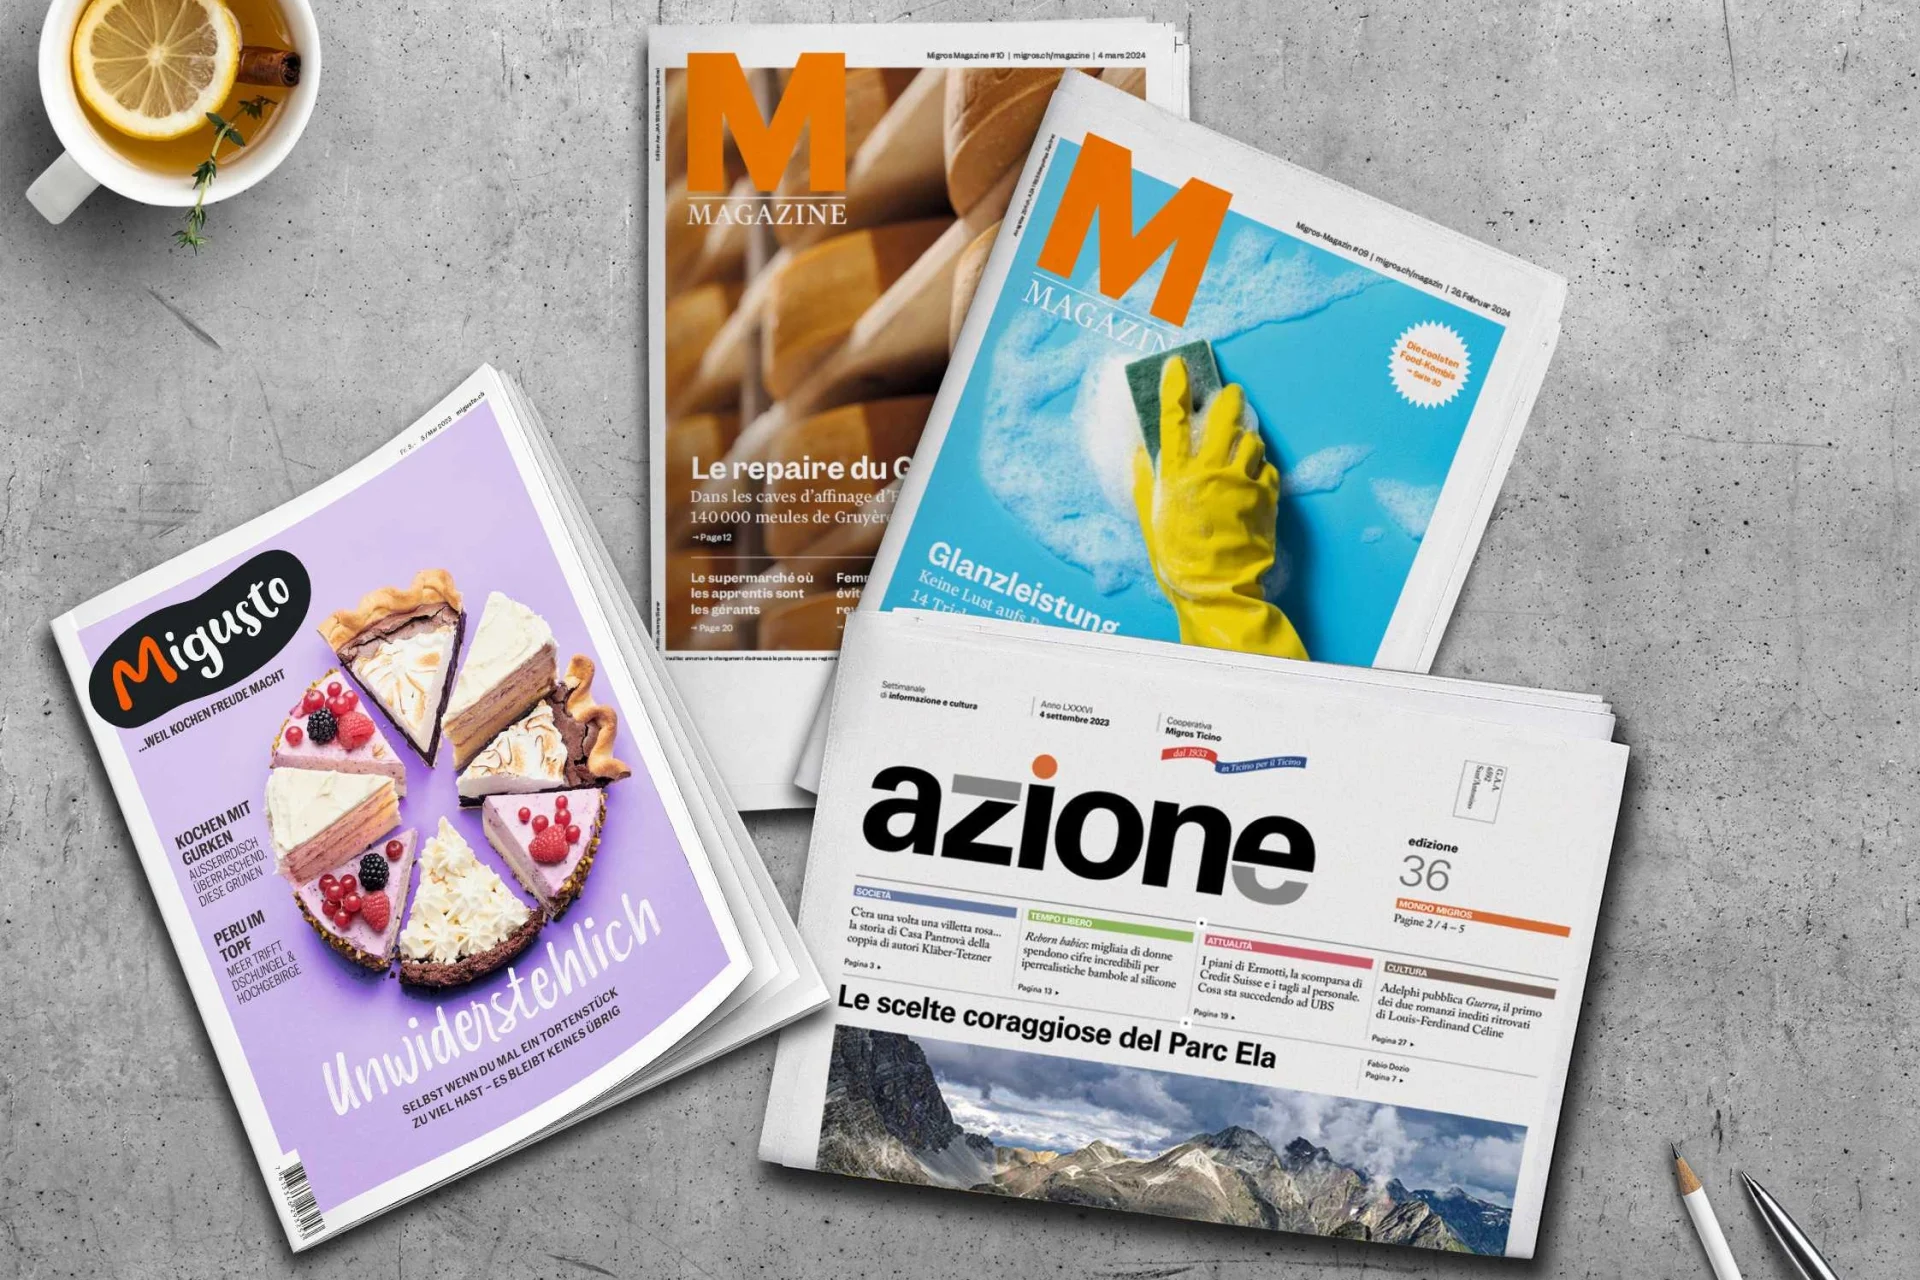 I numeri della rivista Migros, della rivista di cucina Migusto e di Azione giacciono su un tavolo grigio.